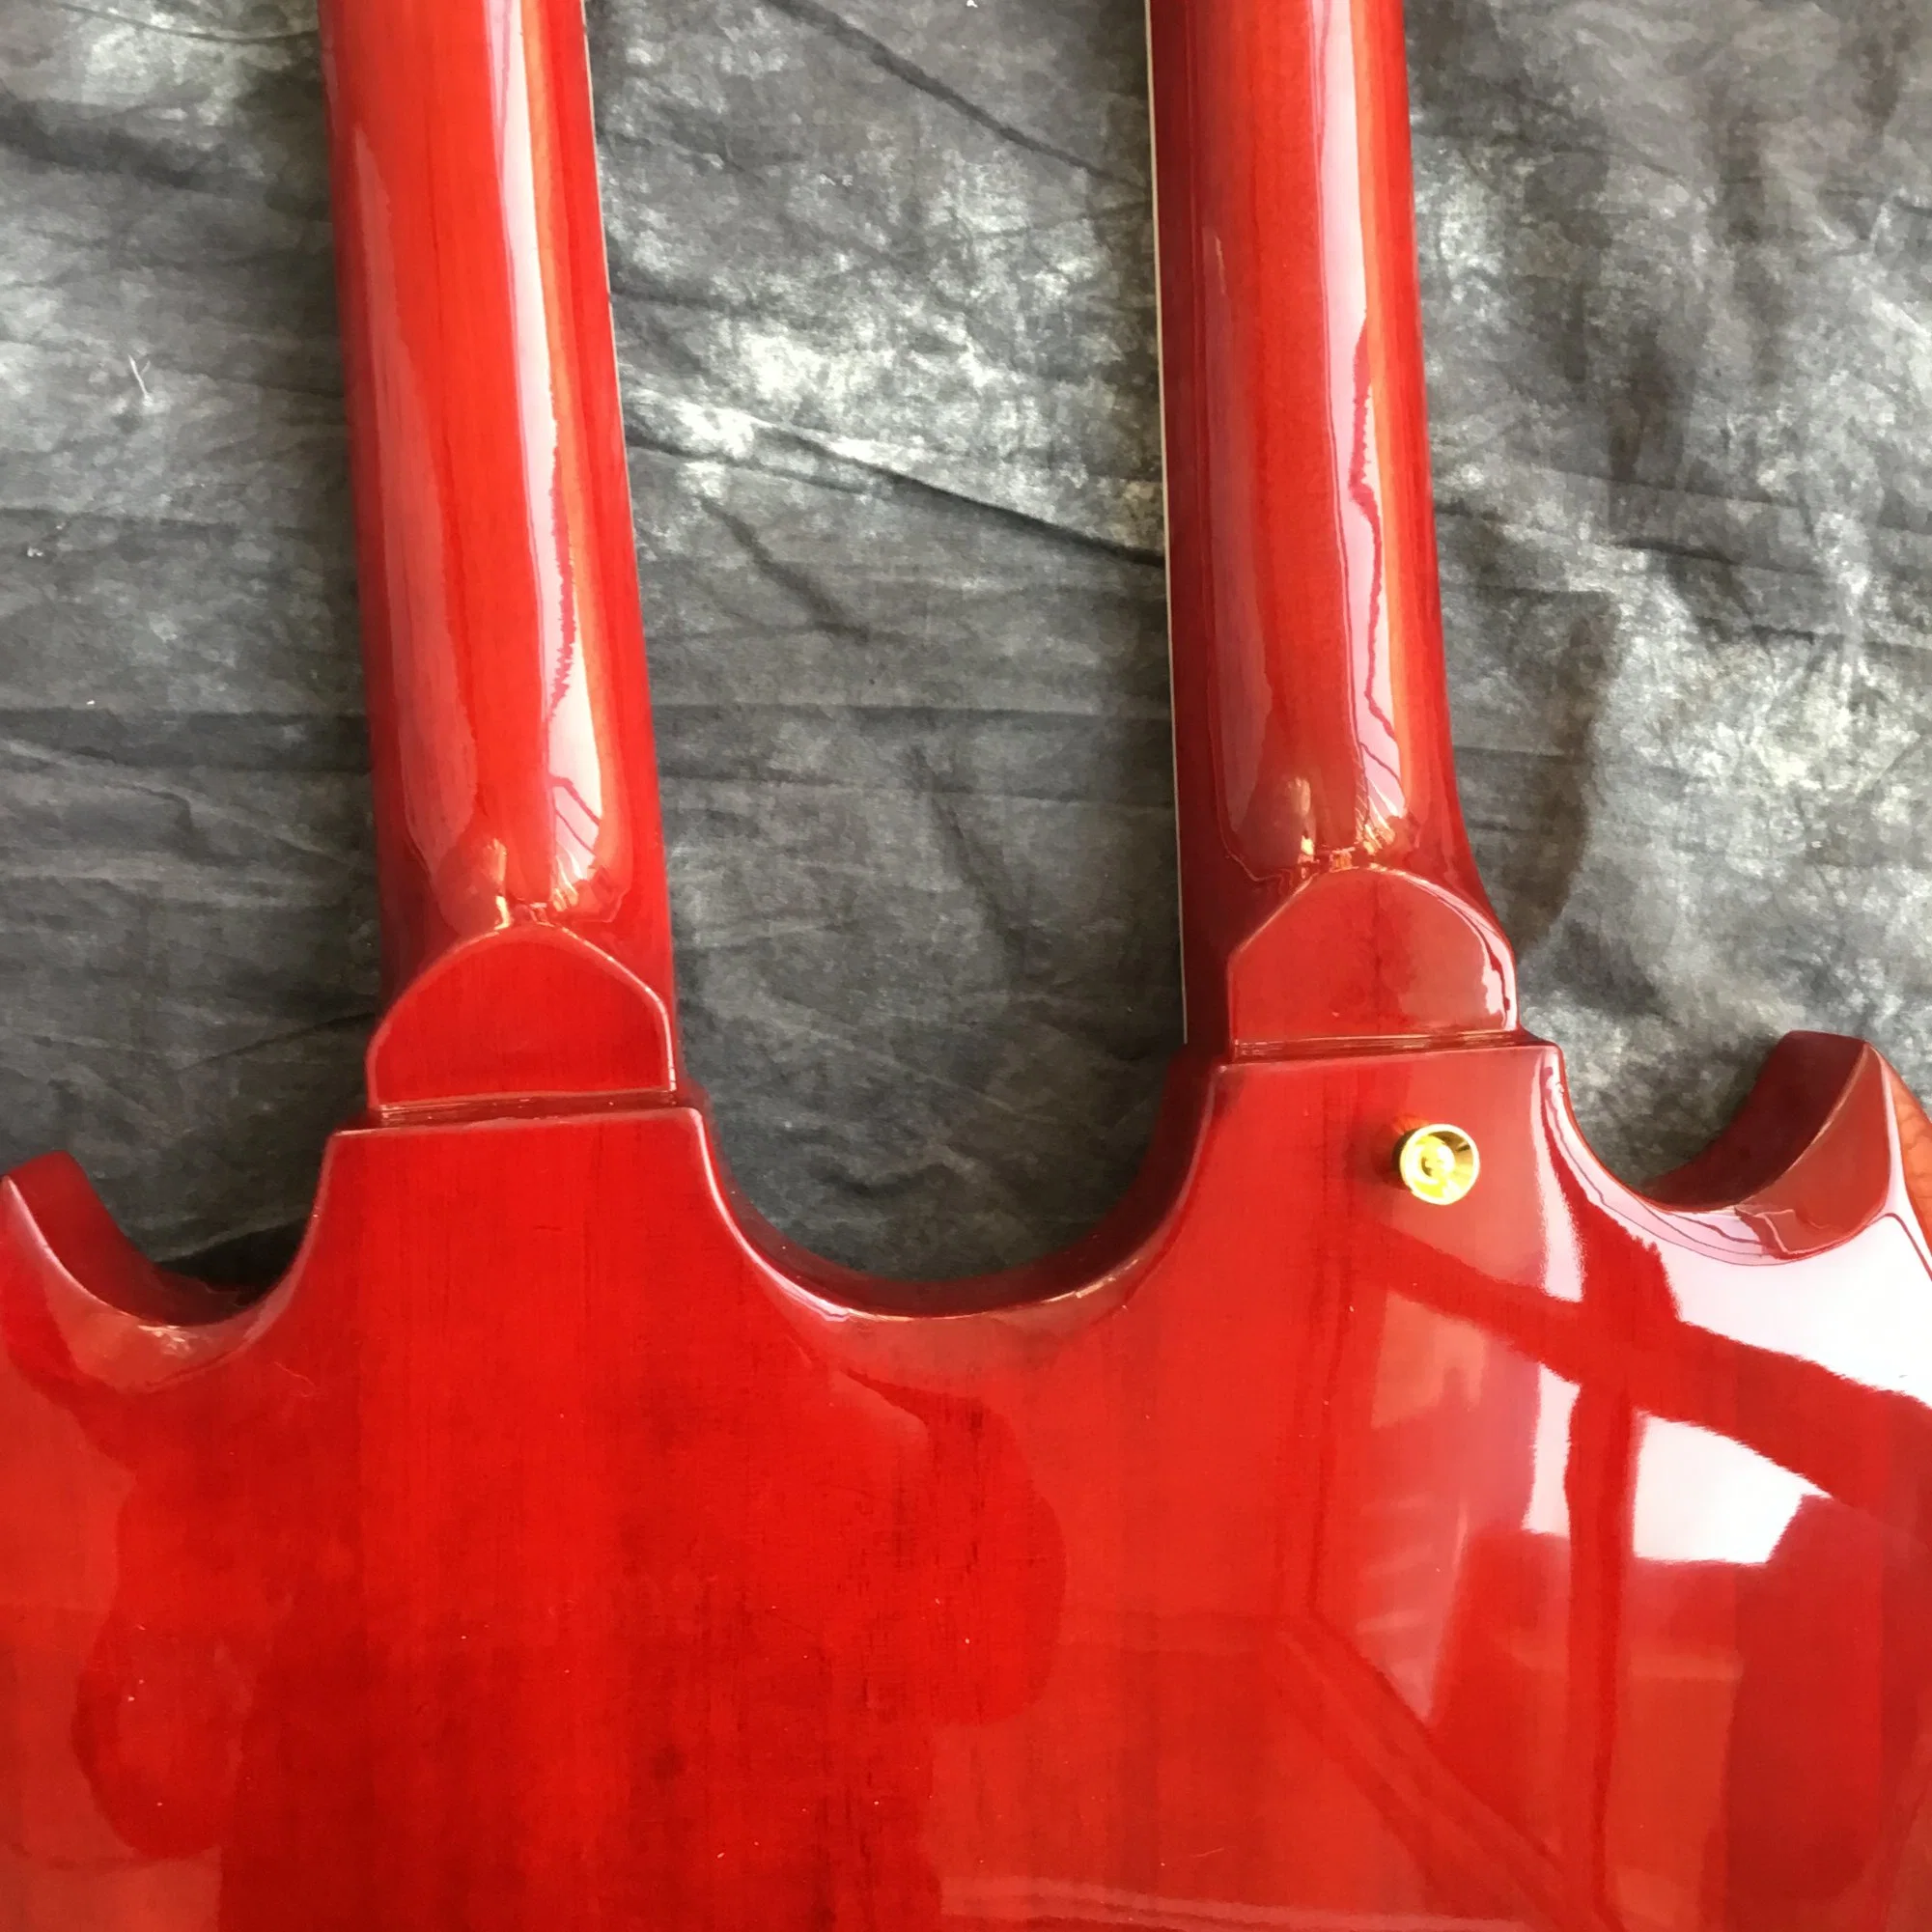 Guitarra elétrica de cabeça dupla personalizada com mais de 12 fios em Vermelho transparente Cor